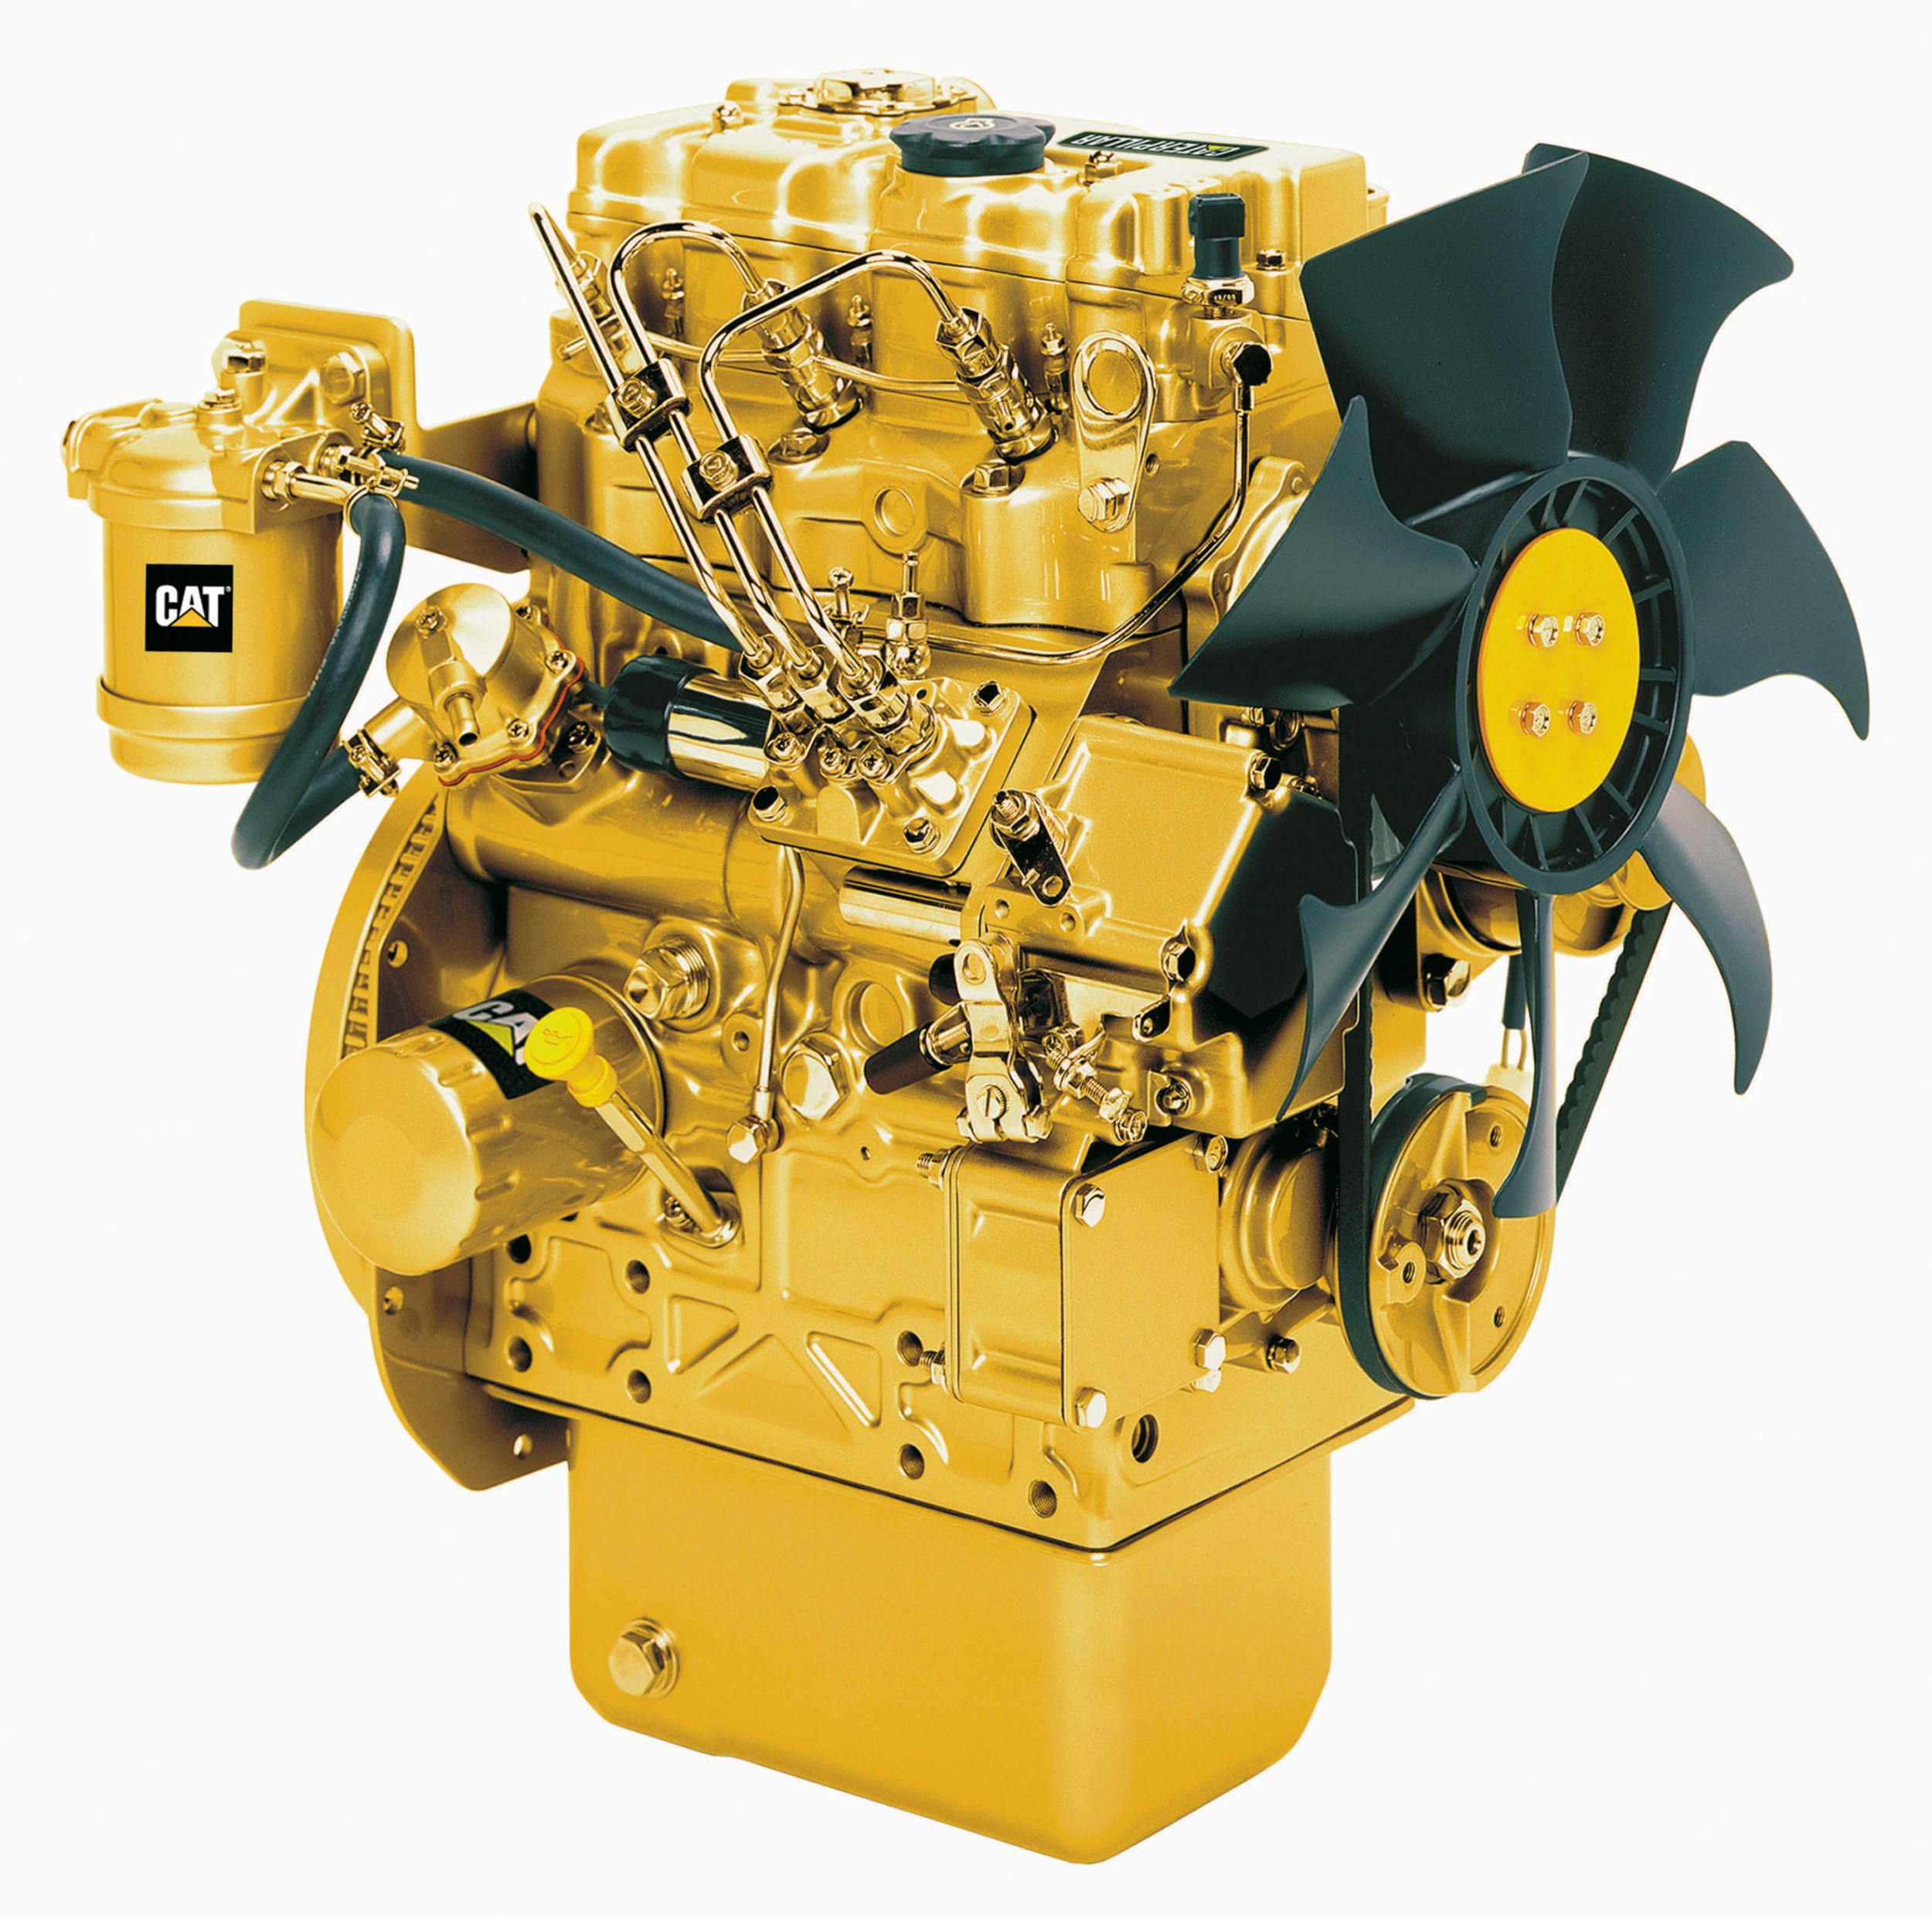 Motores Diesel C1.1 Tier 4 - Altamente Regulamentado